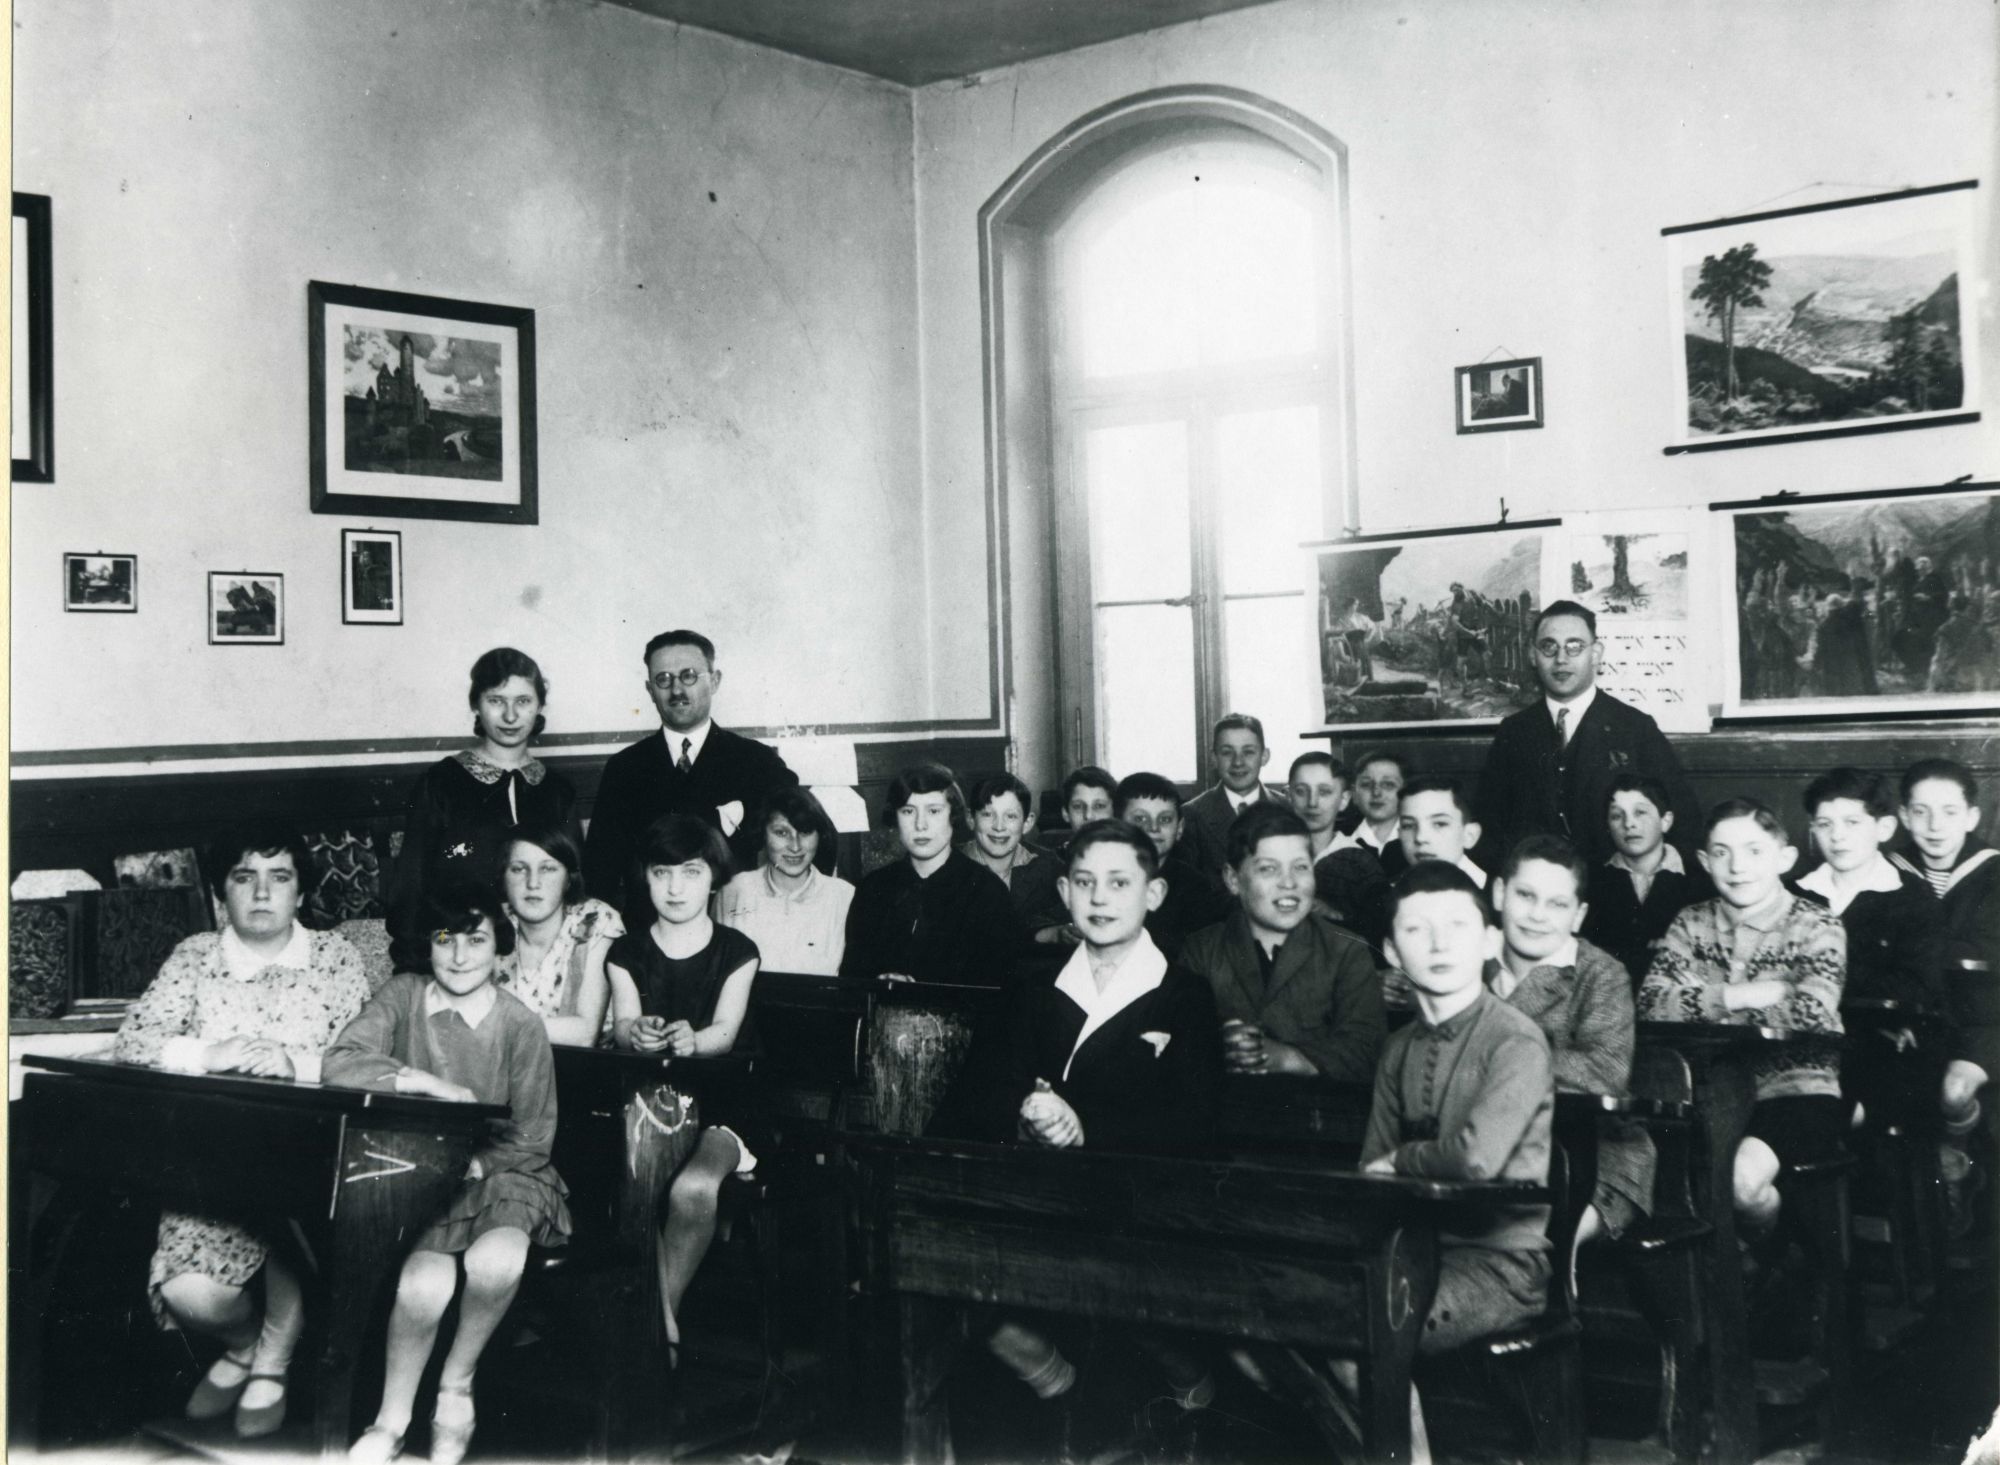 Stadtarchiv: Vortrag zur jüdischen Volksschule in Duisburg (1927-1942) und Führung zu jüdischem Leben im Duisburger Norden